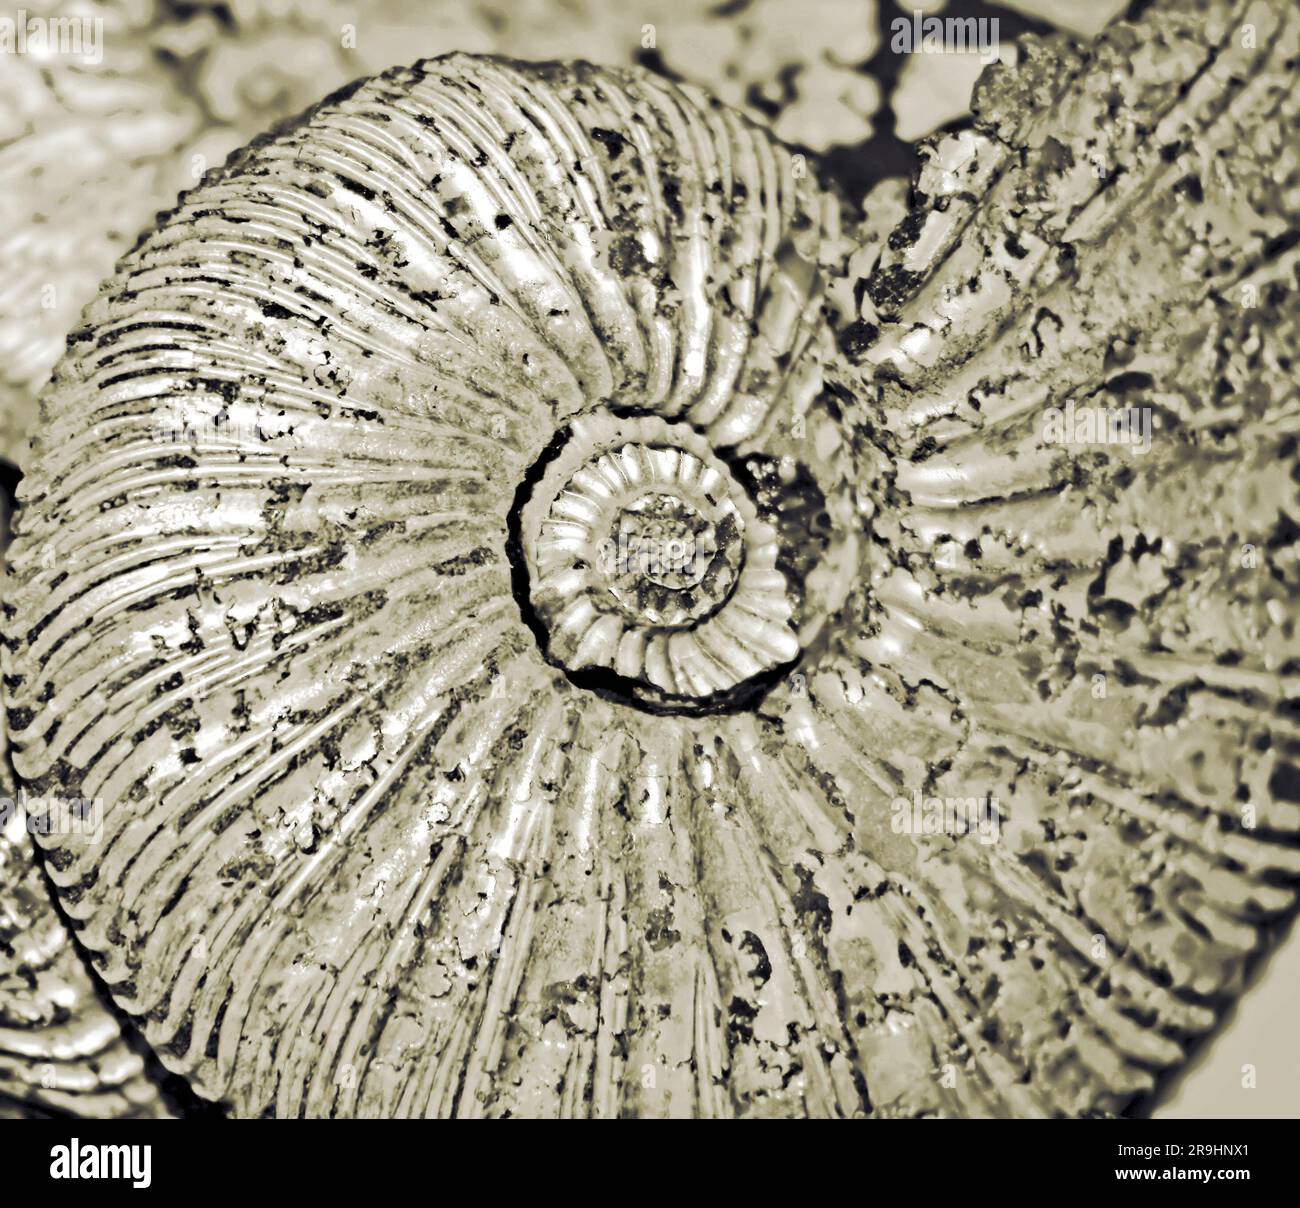 fossilized ammonite background Stock Photo